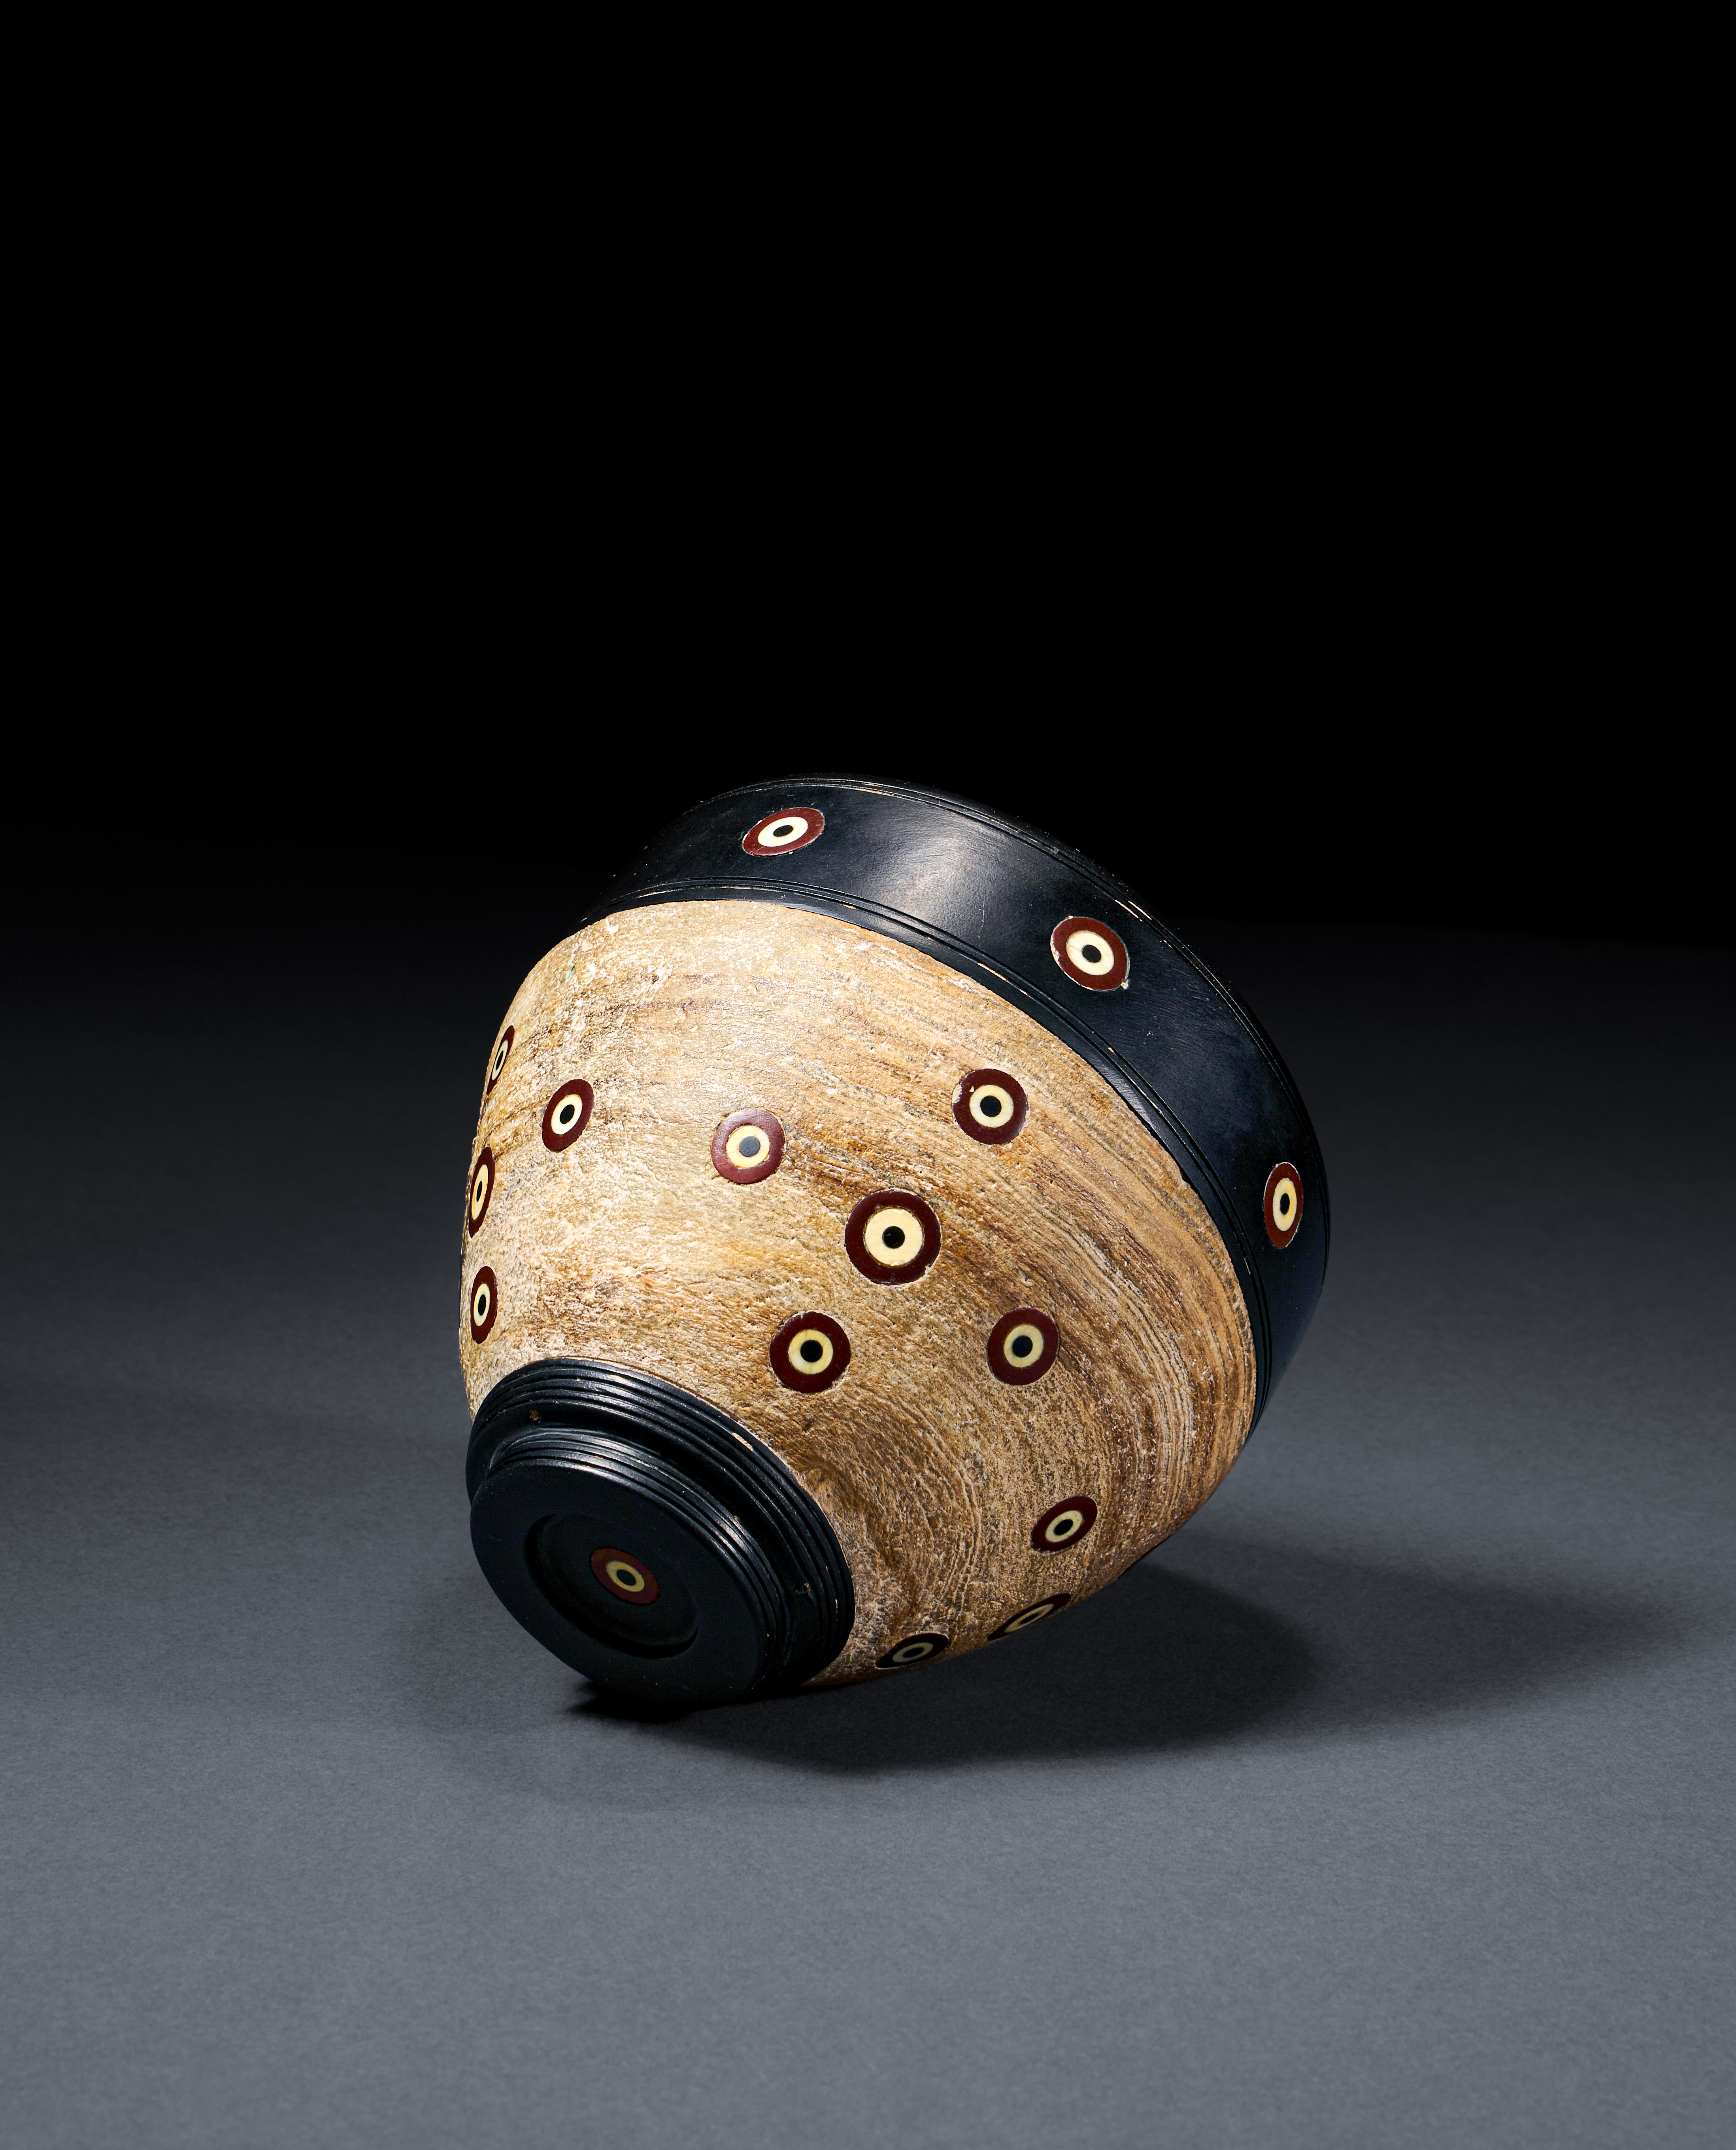 A RARE ELAMITE ALABASTER INLAID CUP, CIRCA 3000 B.C. - Image 3 of 4